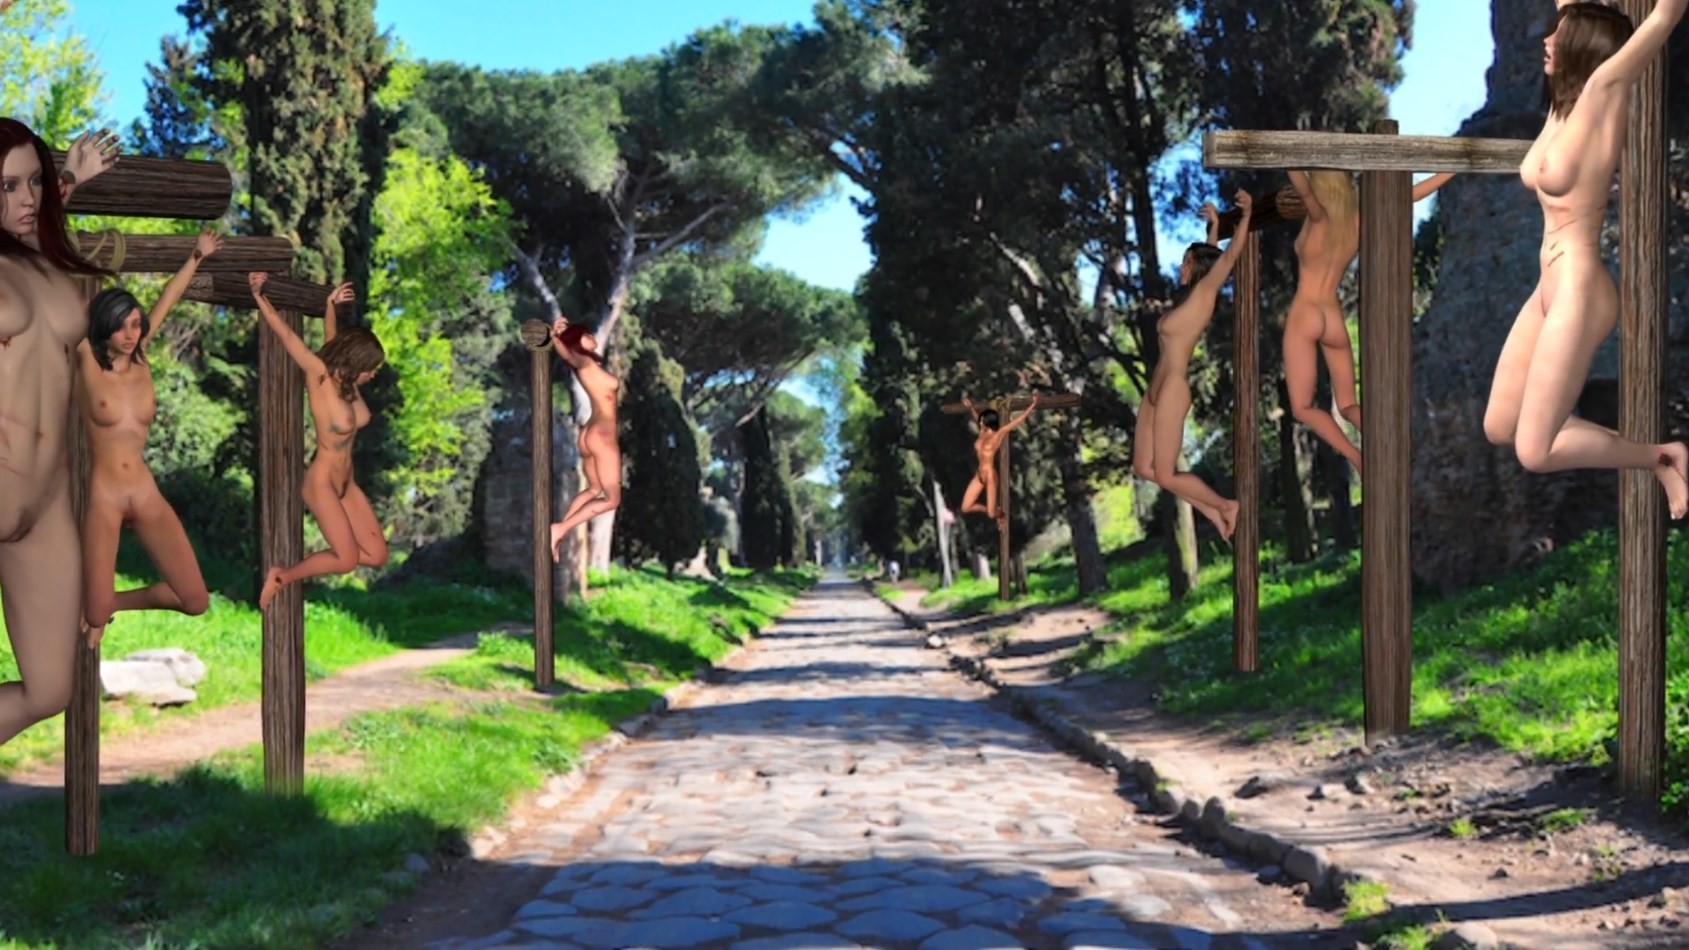 Appian way walking tour